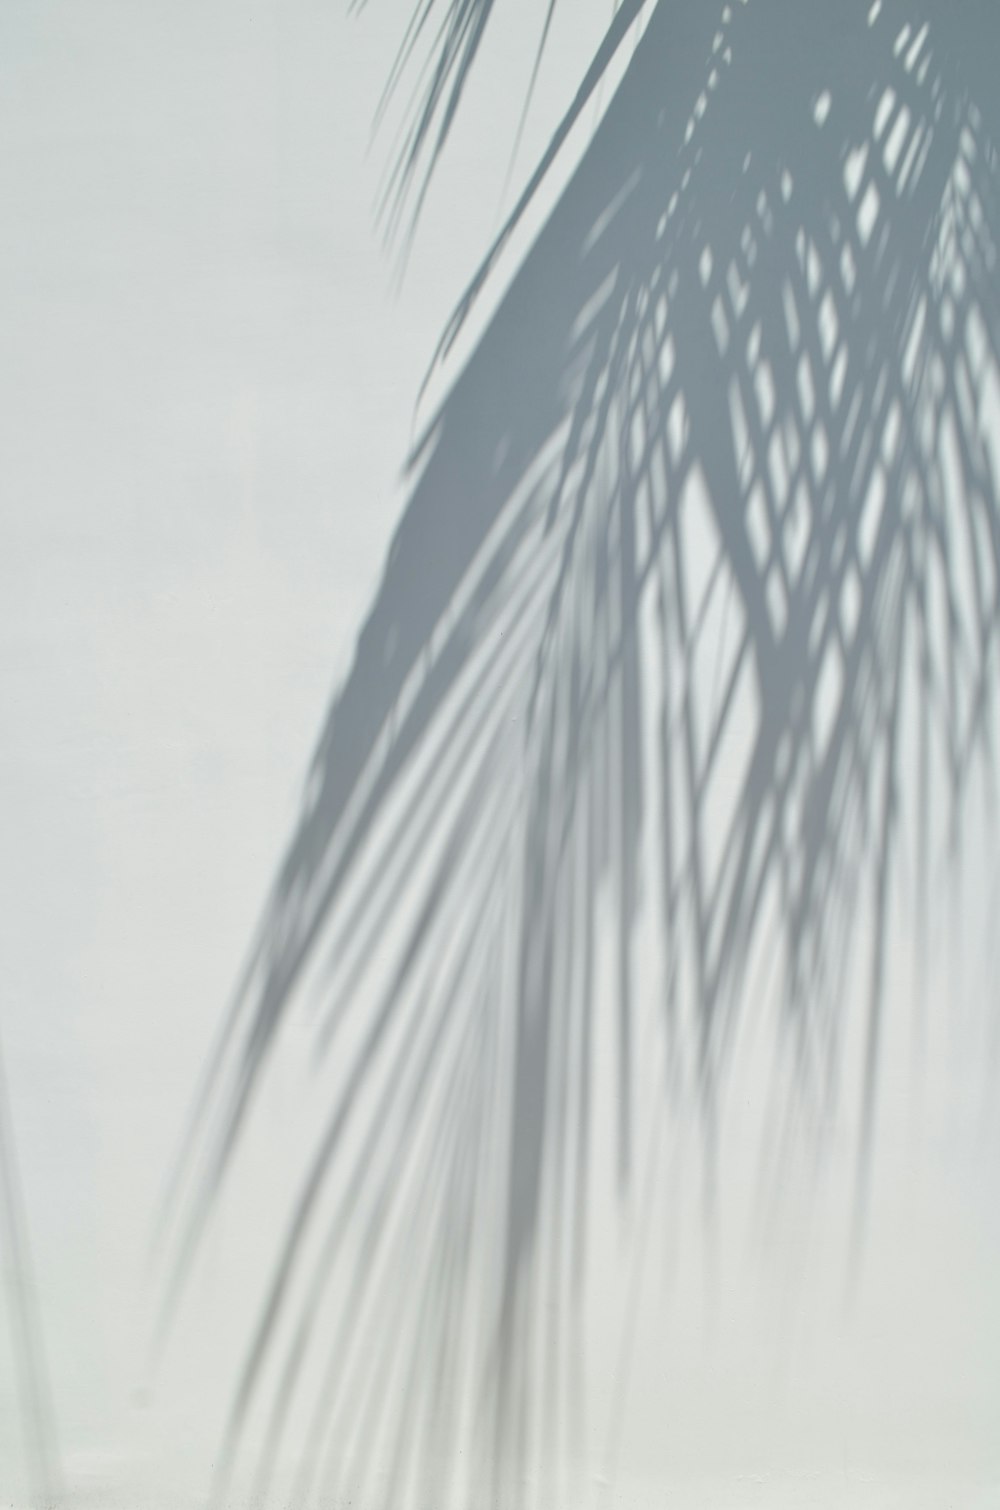 Una palmera proyecta una sombra sobre una pared blanca